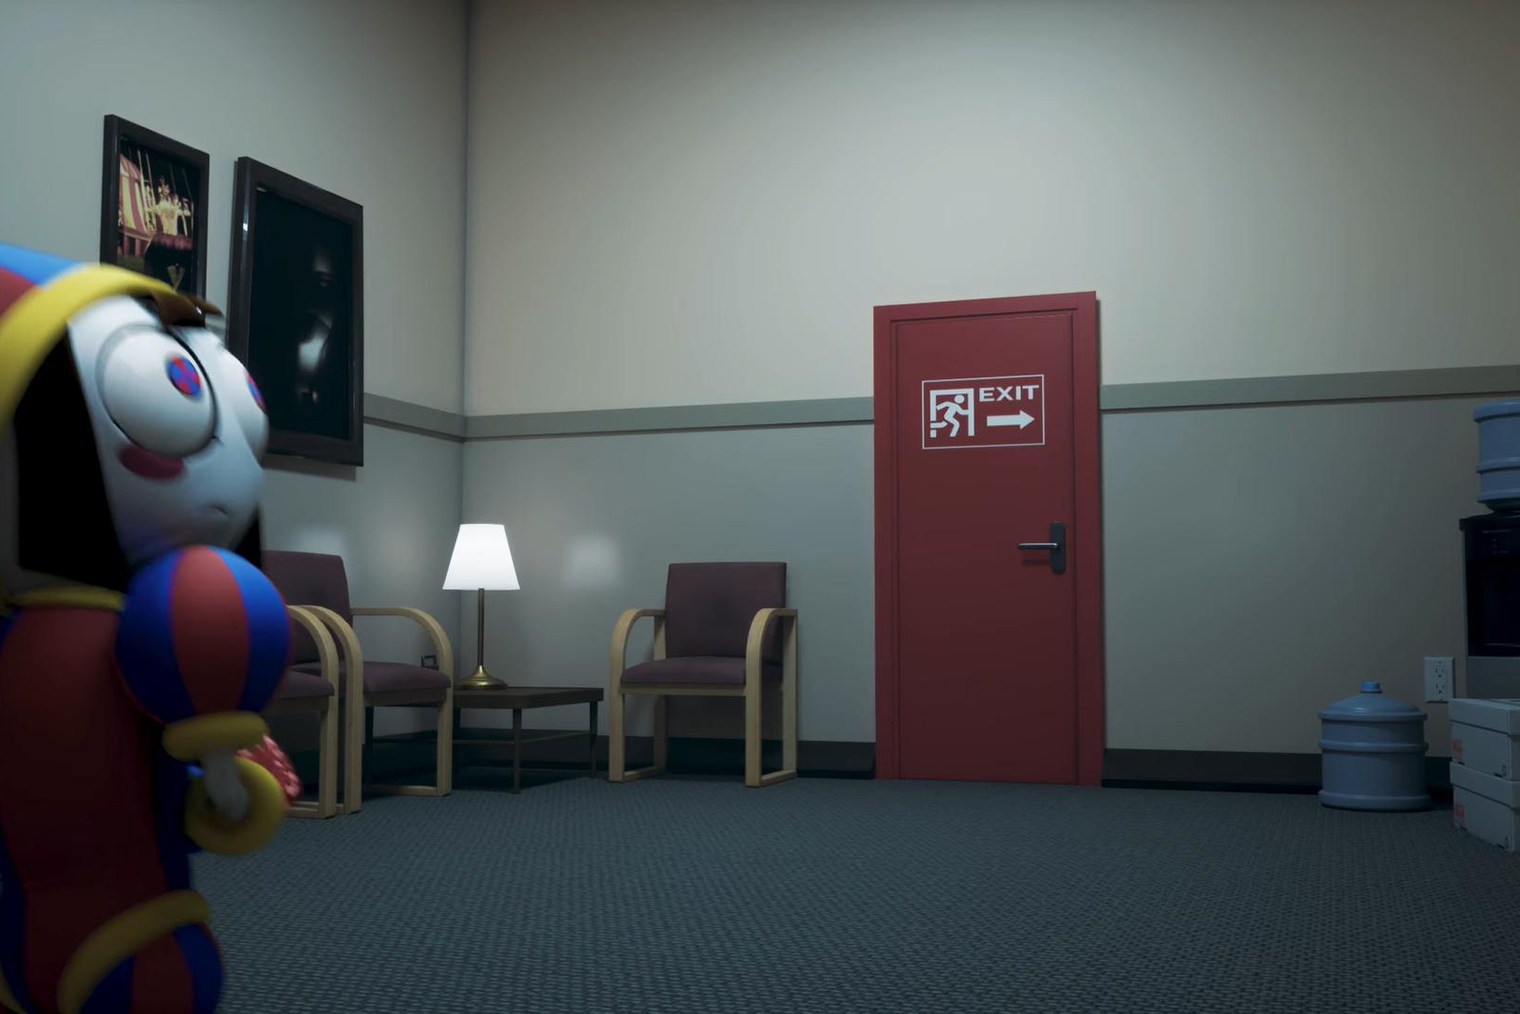 Сцена, в которой героиня попадает в офисные коридоры, напоминающие что⁠-⁠то из видеоигры The Stanley Parable — абсурдистской и местами жуткой комедии об иллюзии выбора в жизни современного человека. Источник: Glitch